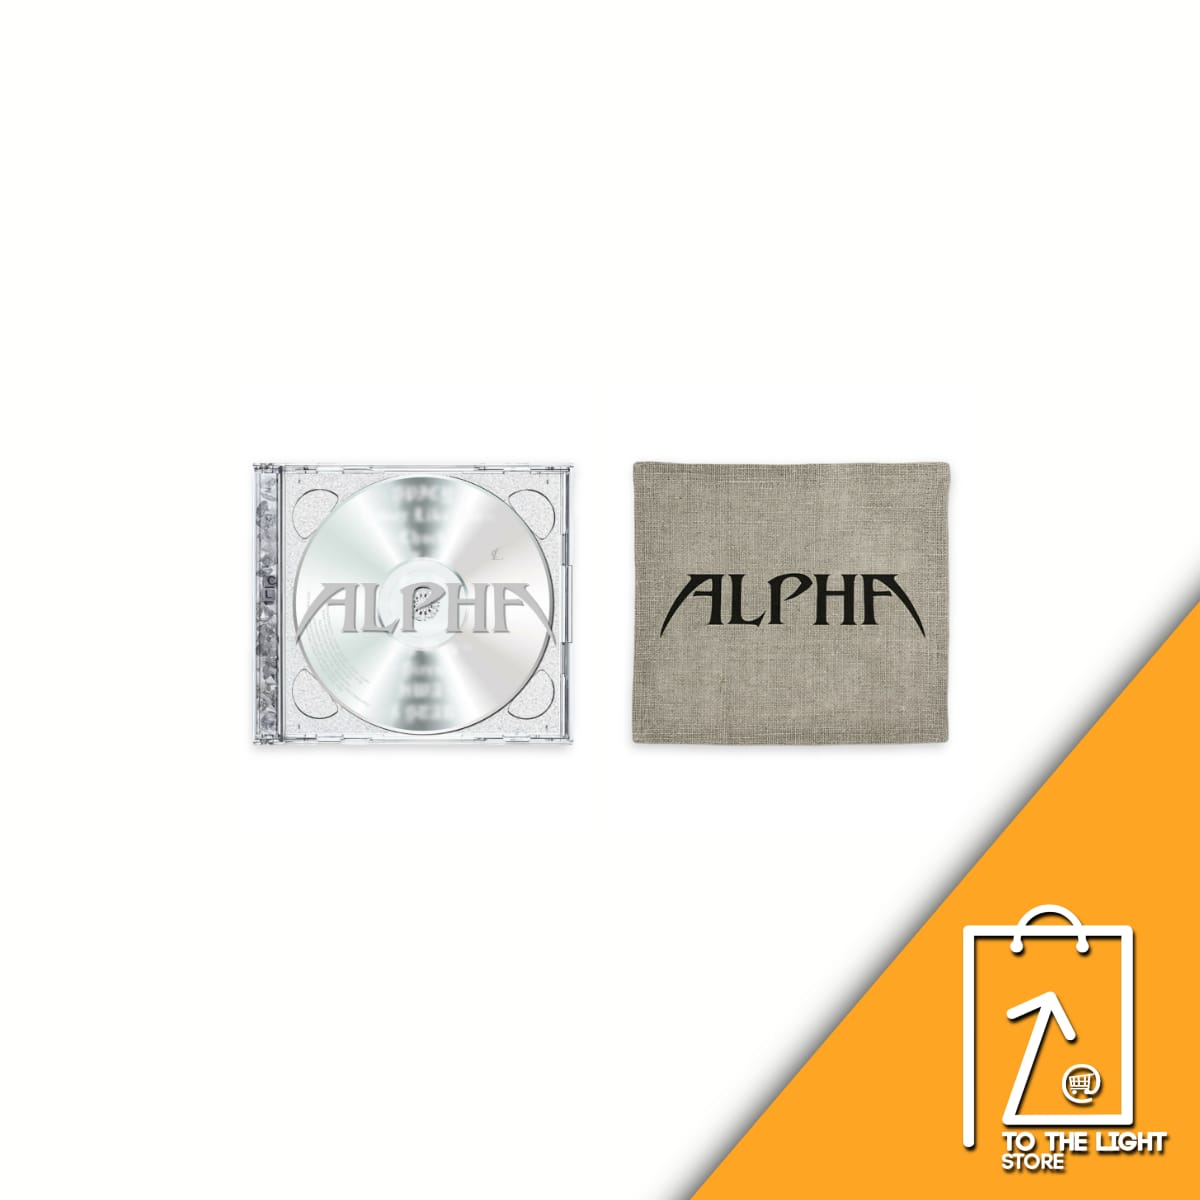 Album de CL ALPHA Color Ver. o Mono Ver.